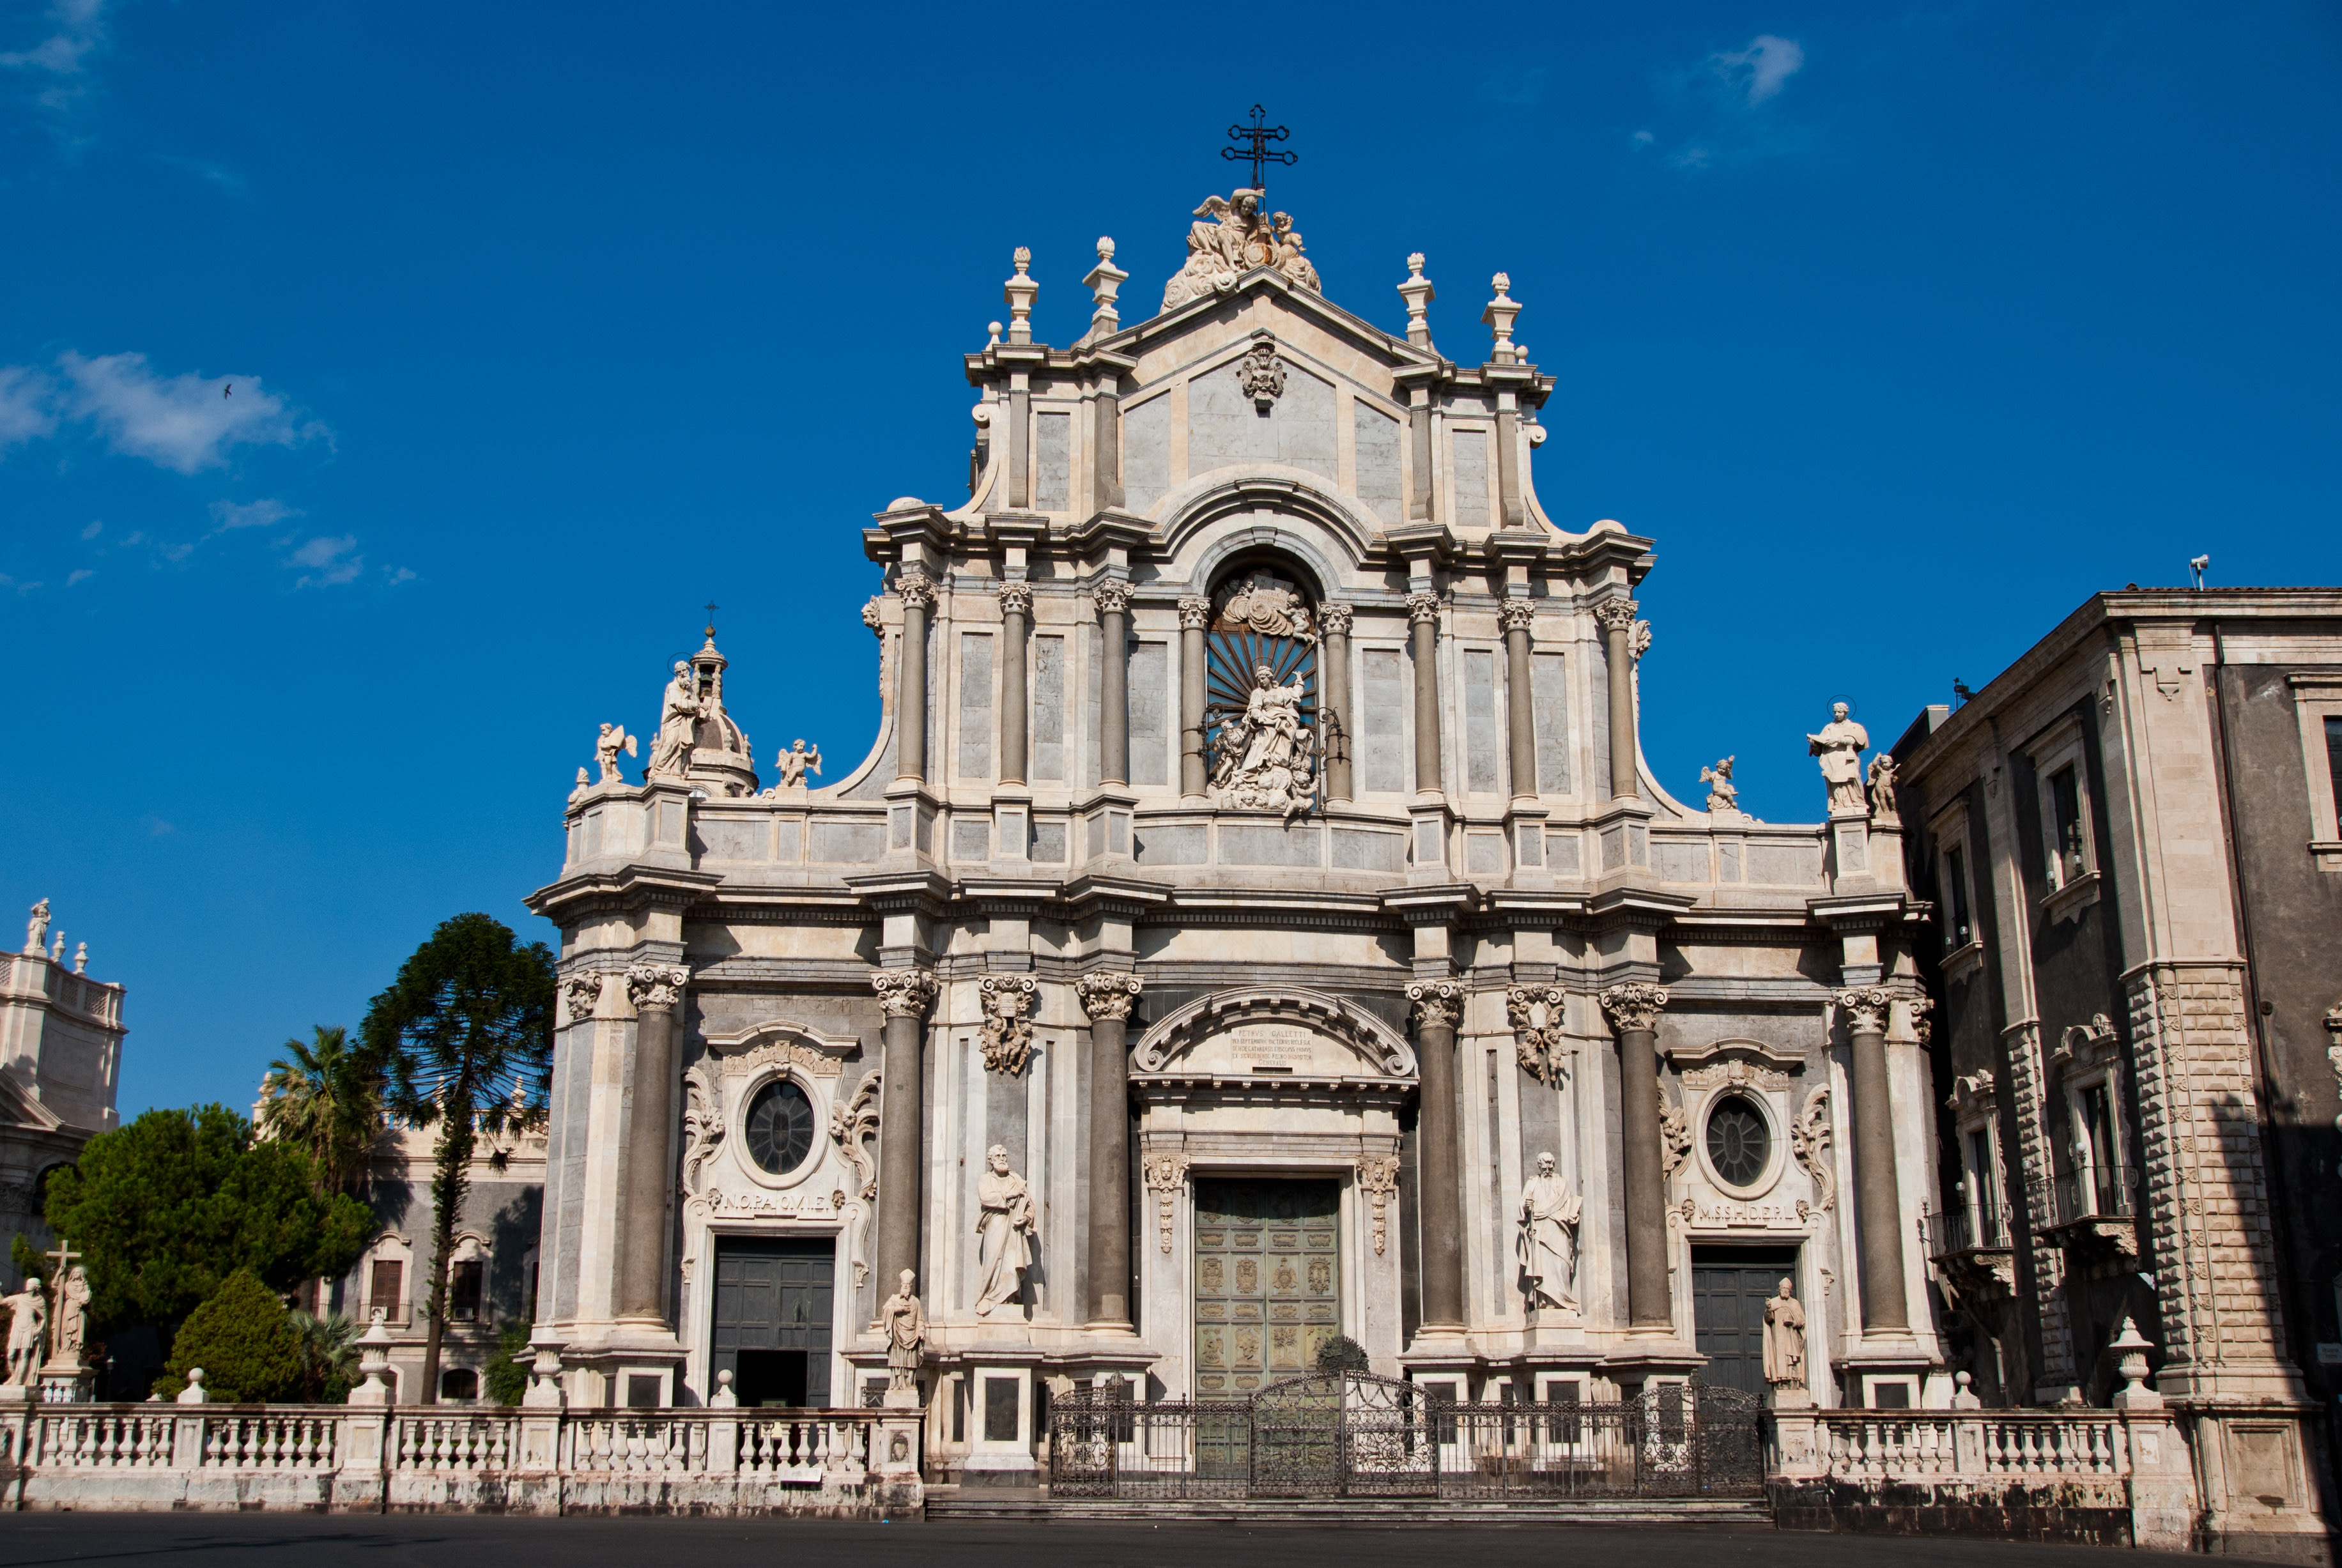 Cattedrale di Sant’Agata, beeld: AS / rulon oboev